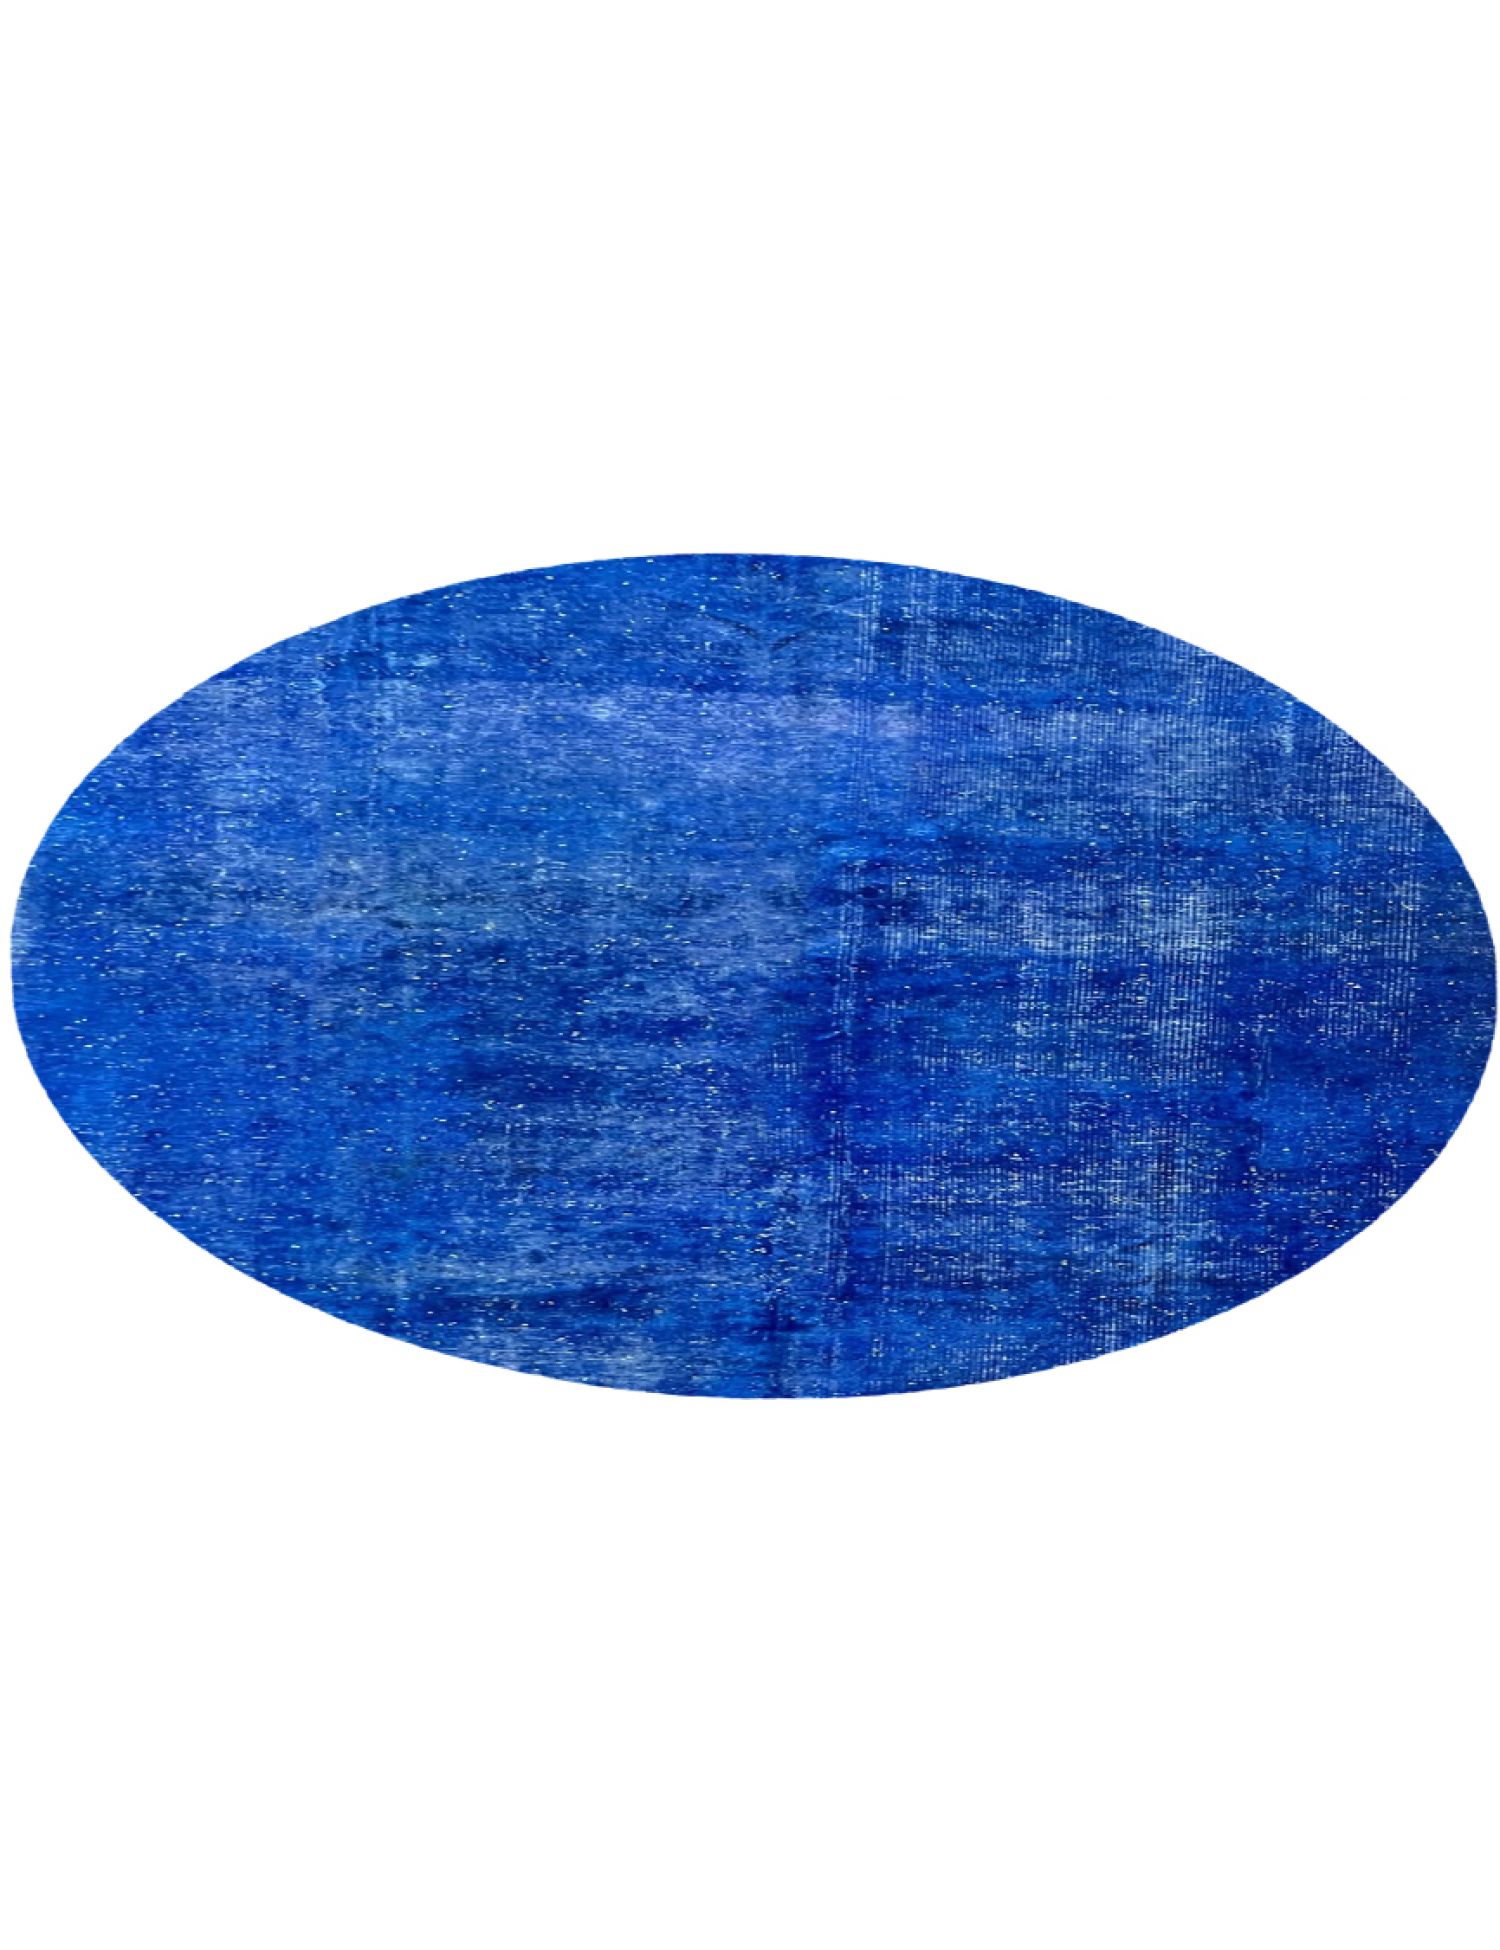 Vintage Teppich  blau <br/>270 x 270 cm